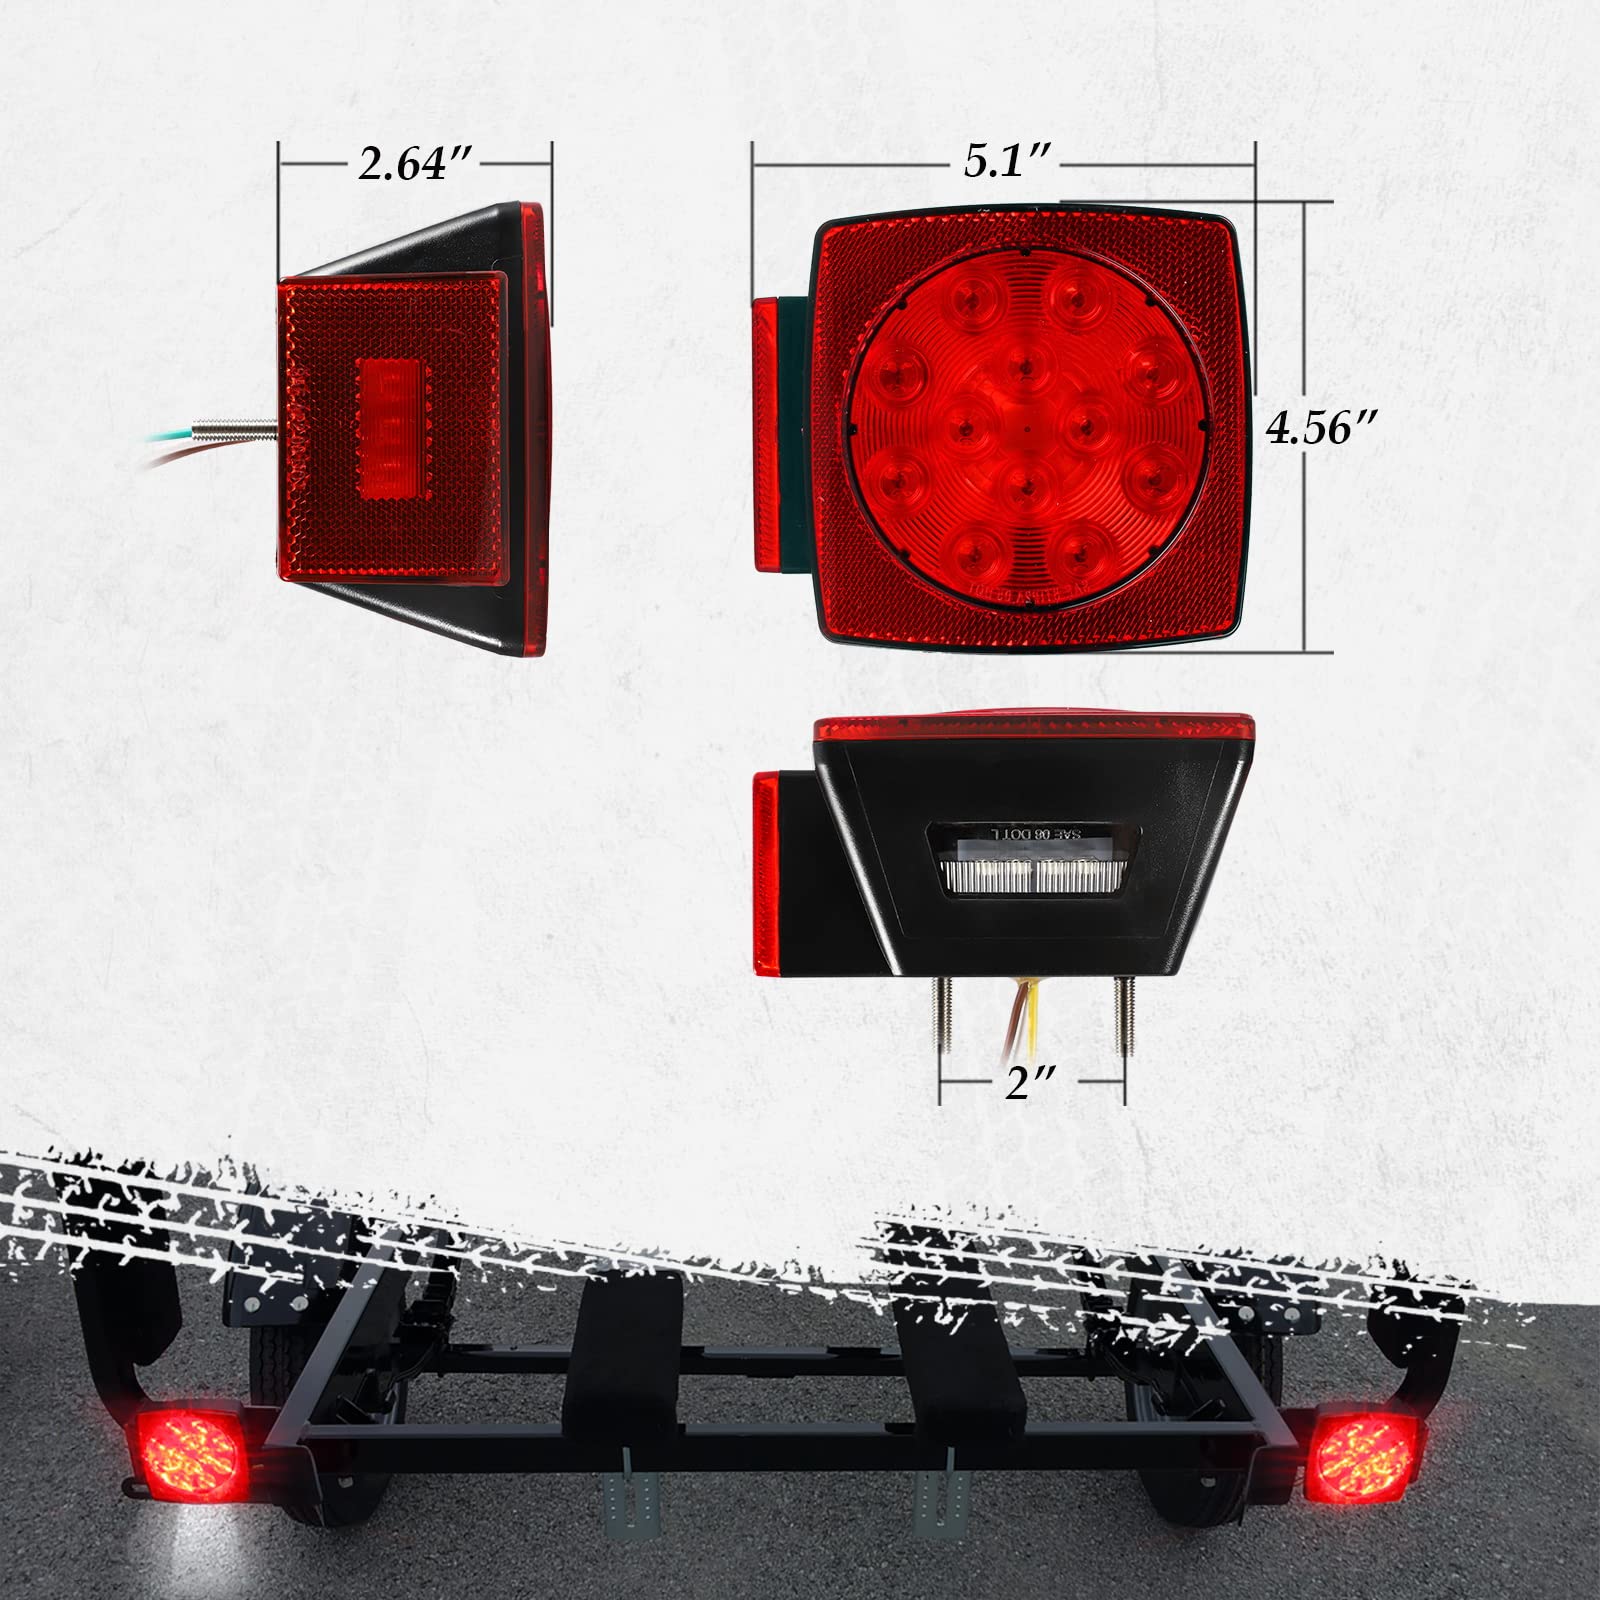 Partsam 12V Submersible Square Led Trailer Light,Red White LED Stop Turn Tail License Brake Running Light Lamp for Trailers Under 80